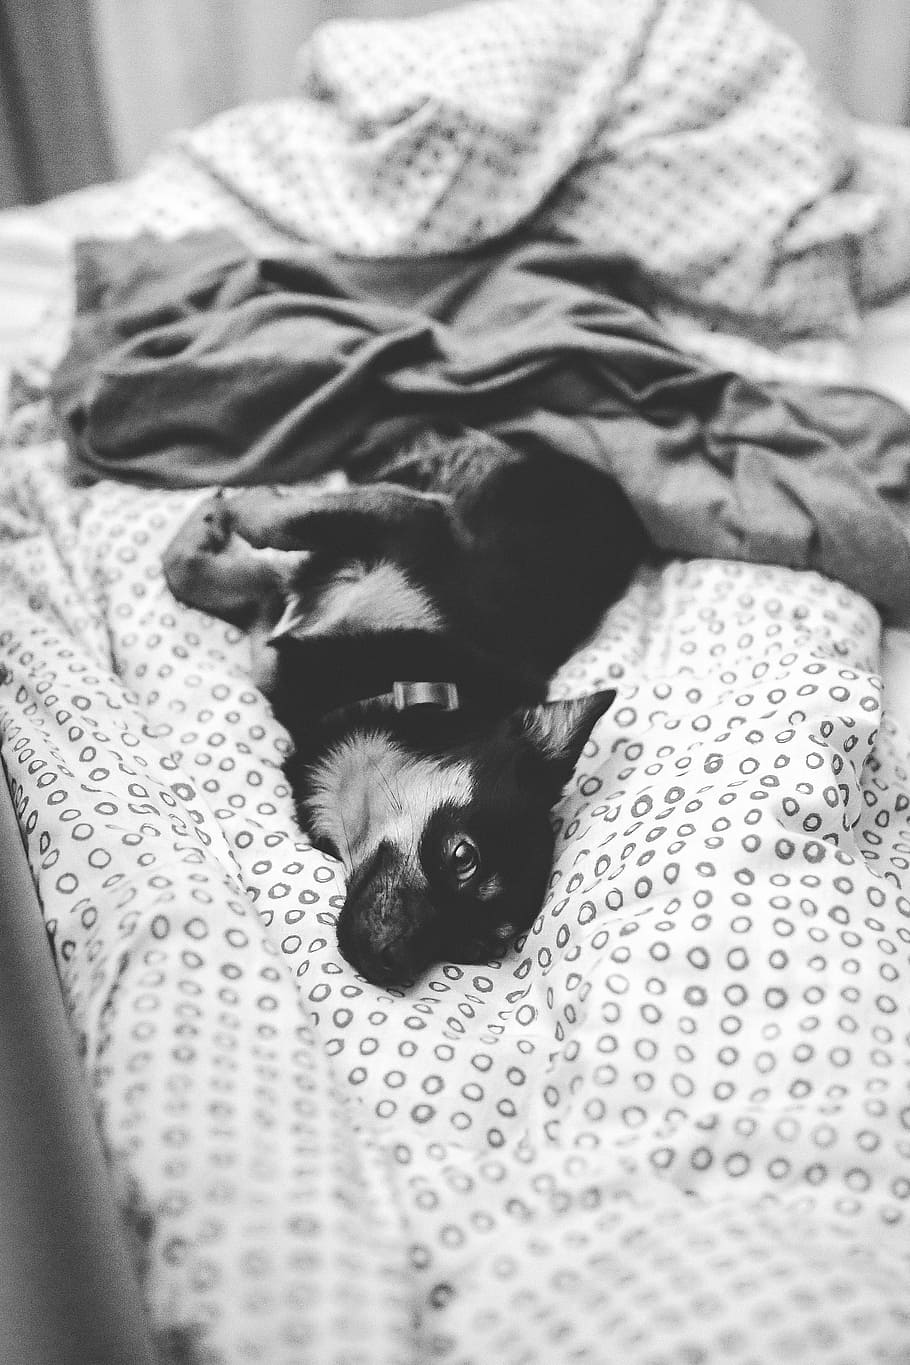 横になっている, ベッド, 犬, ペット, 動物, かわいい, 子犬, blackandwhite, 寝ている, 横たわっている